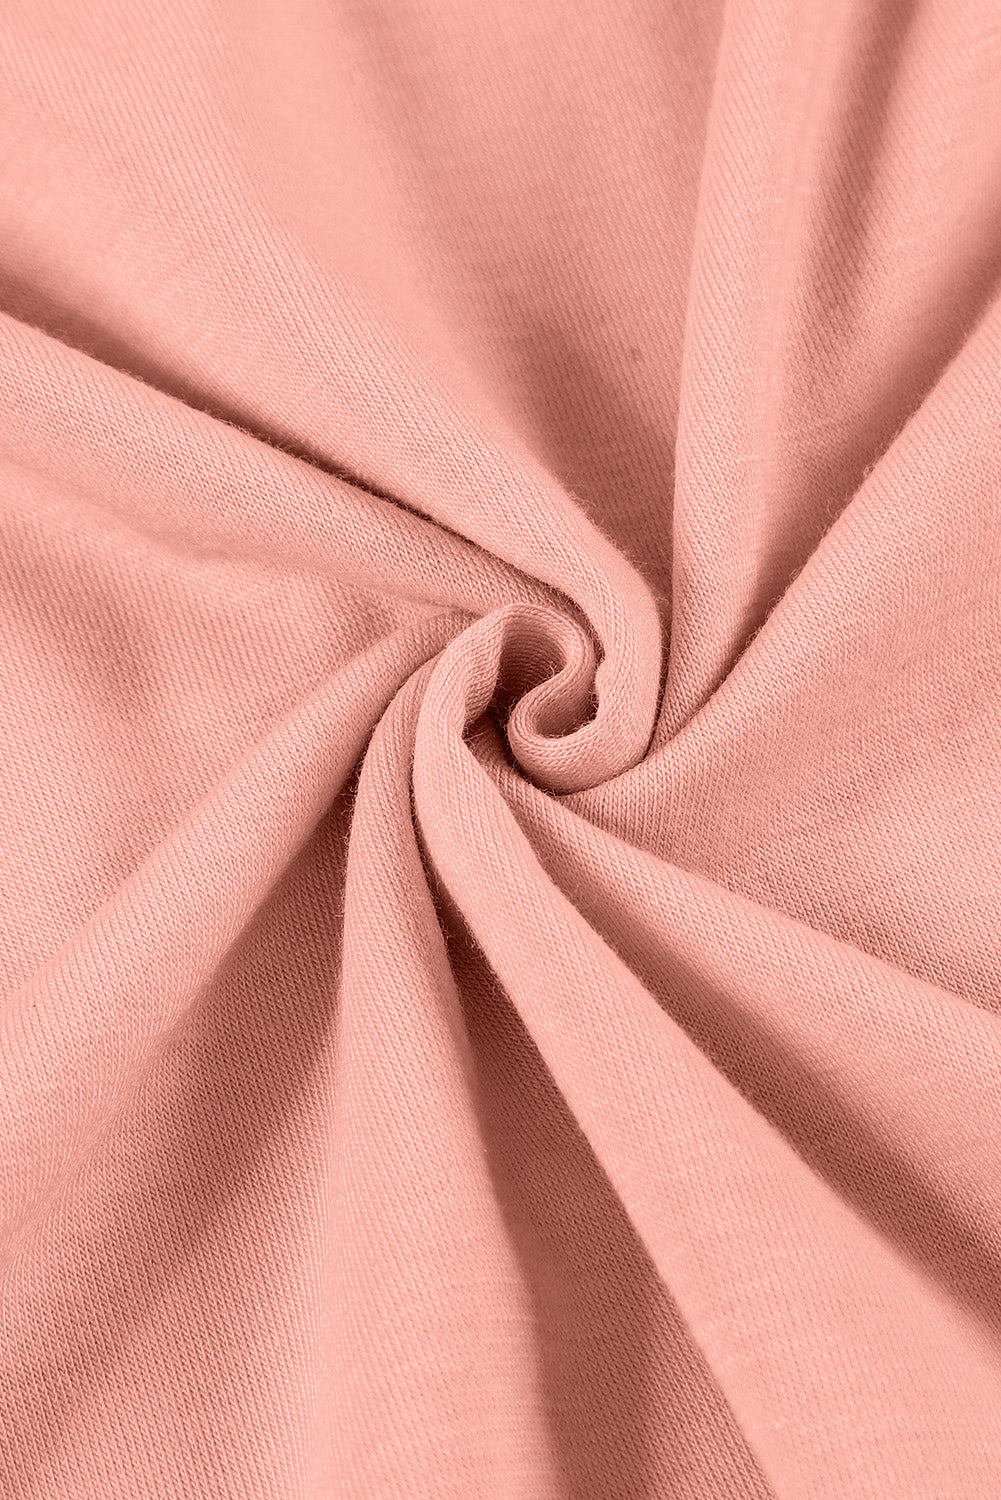 Rosafarbenes Plus-Size-Top mit eckigem Ausschnitt und Volantärmeln